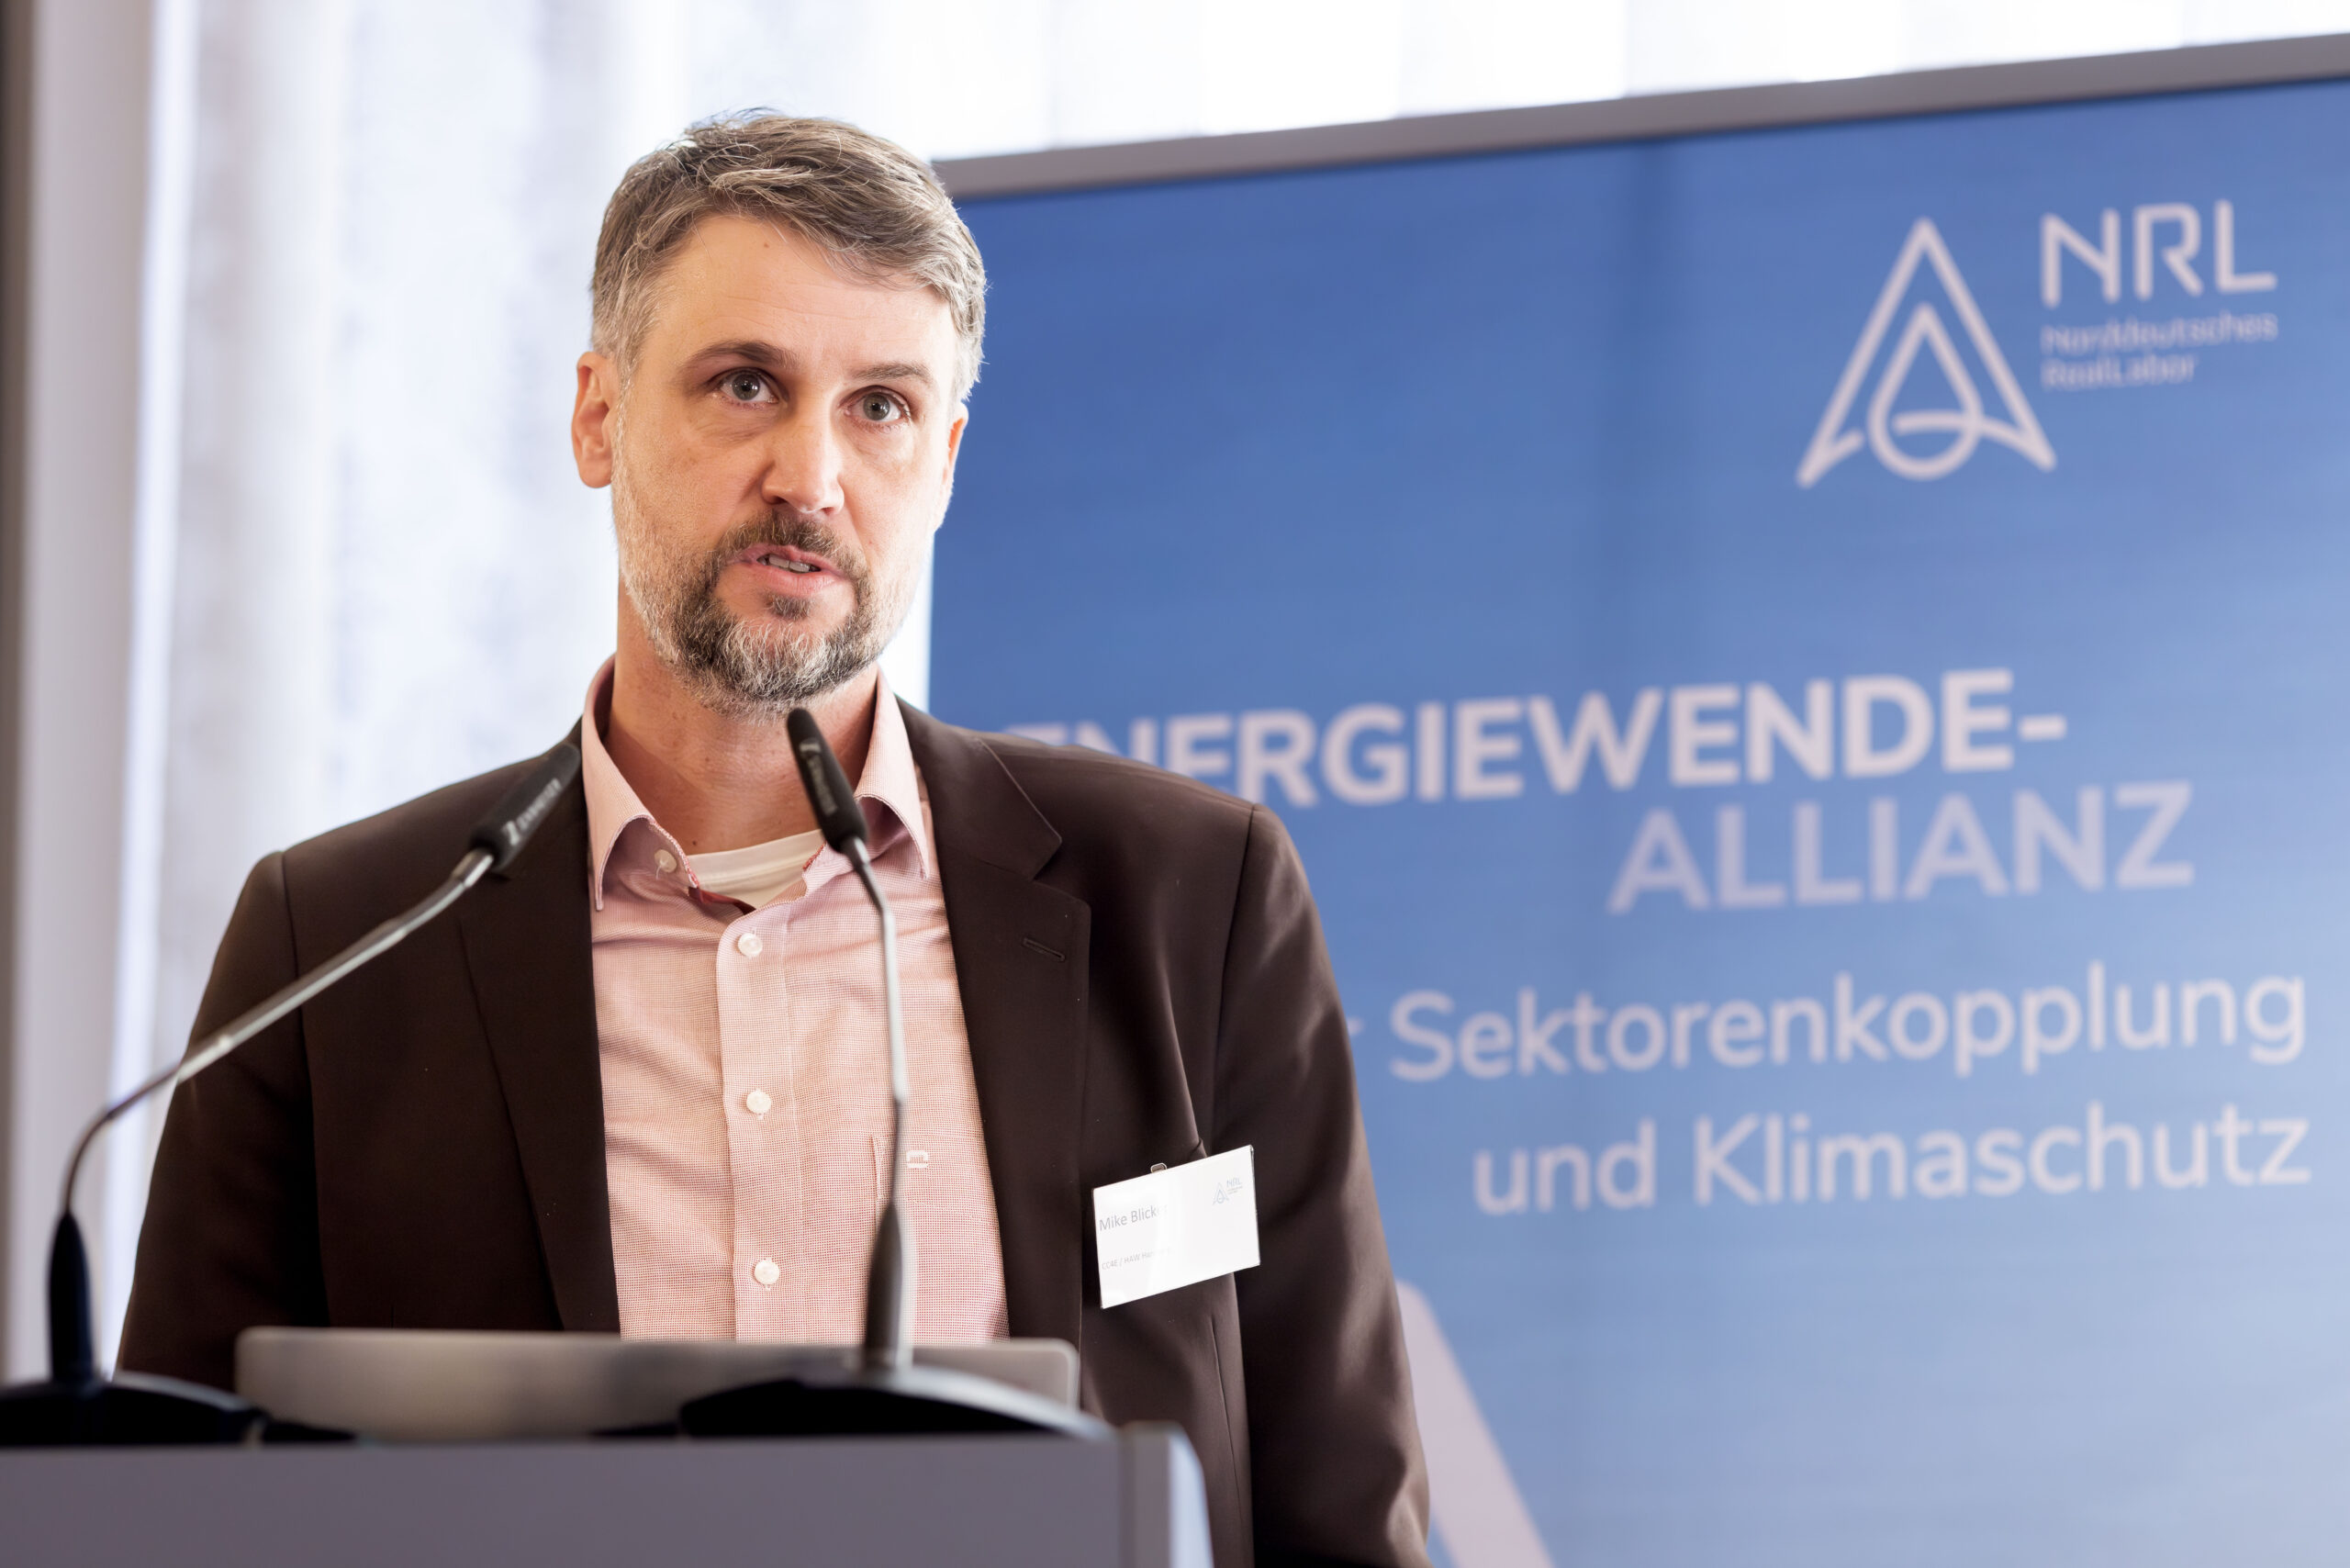 Konsortialtreffen des Norddeutschen Reallabors mit energiepolitischem Dialog. Foto: Frank Molter/NRL